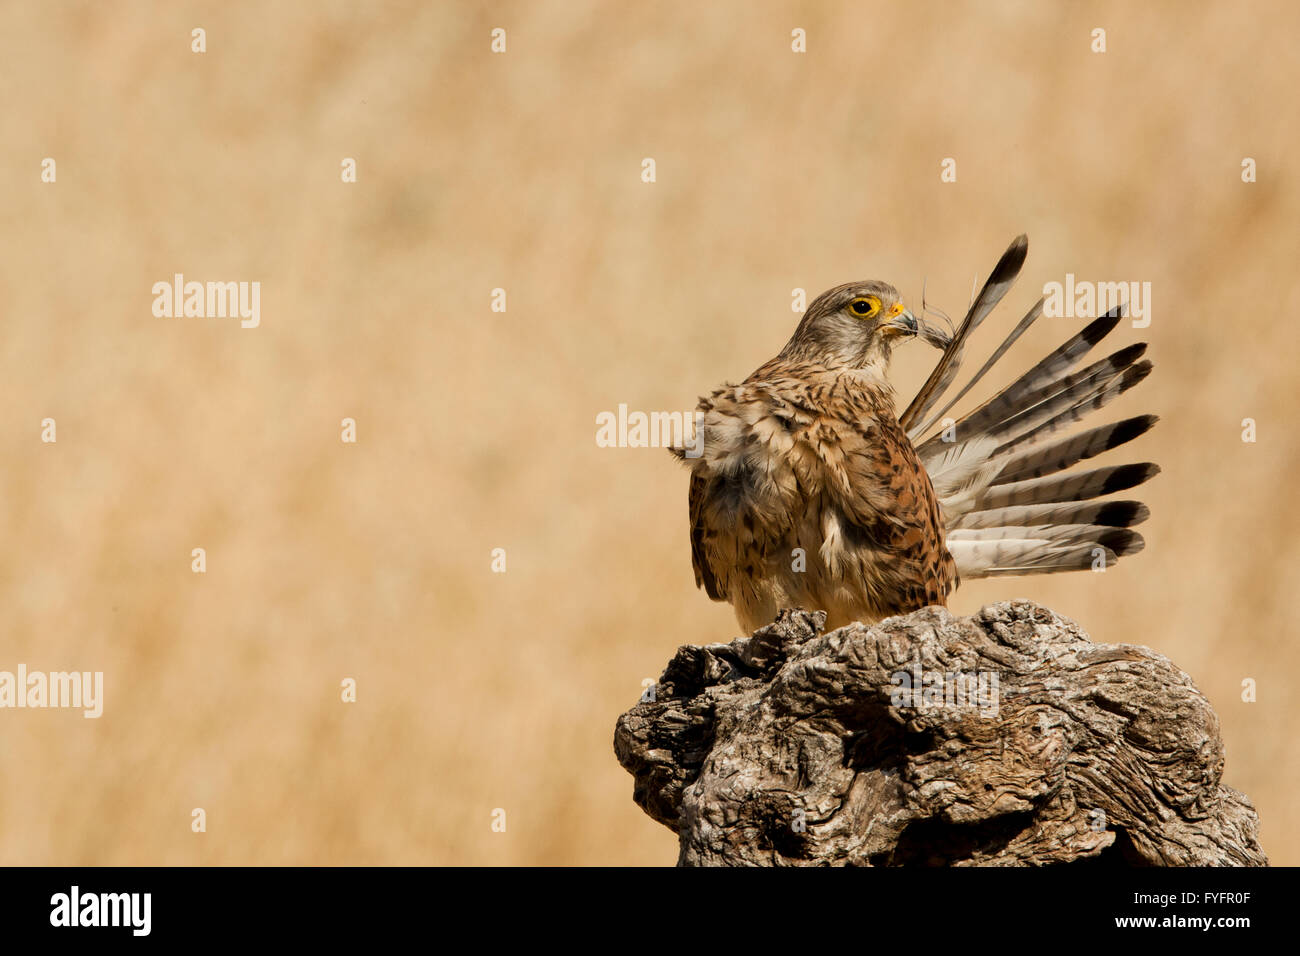 Faucon crécerelle (Falco tinnunculus) femelle nettoie ses plumes. Cet oiseau de proie est un membre de la famille falcon (Falconidae). Banque D'Images